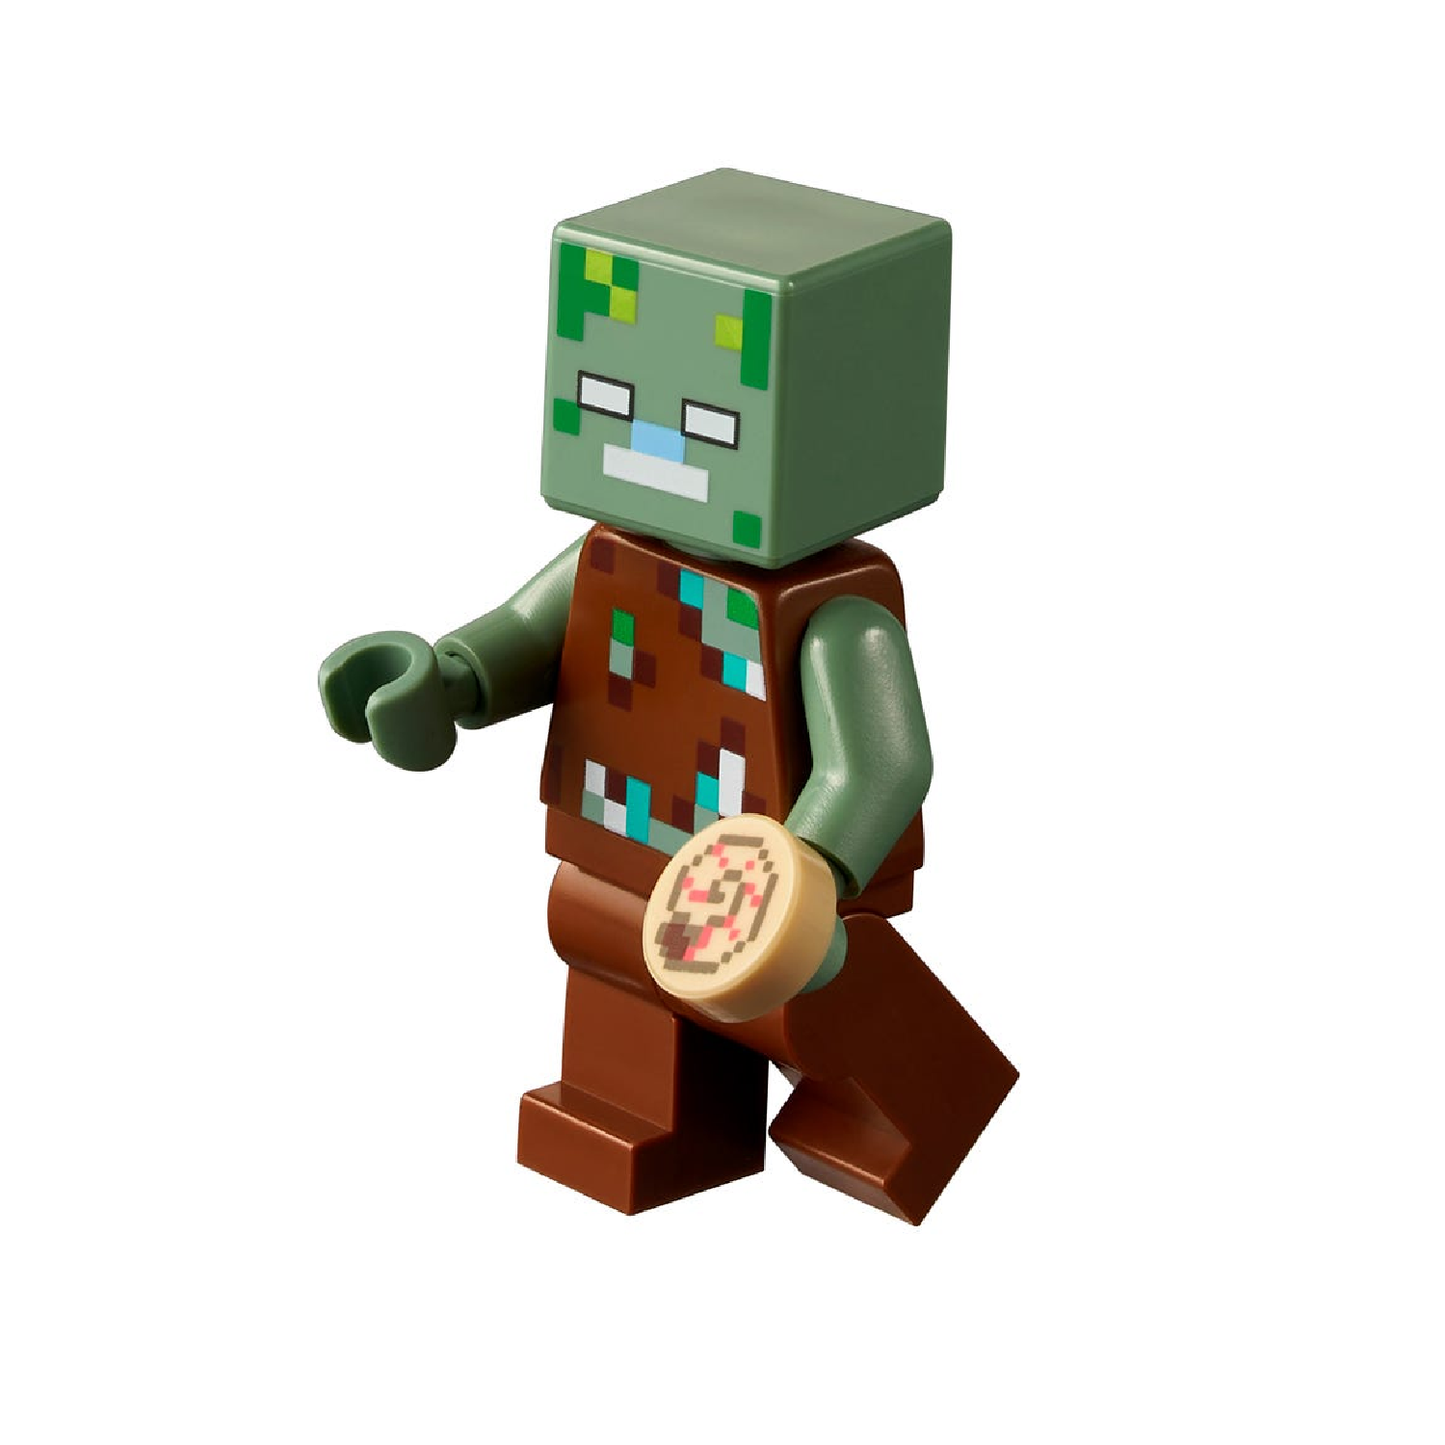 Lego Minecraft Arrecife De Coral 21164 - Crazygames